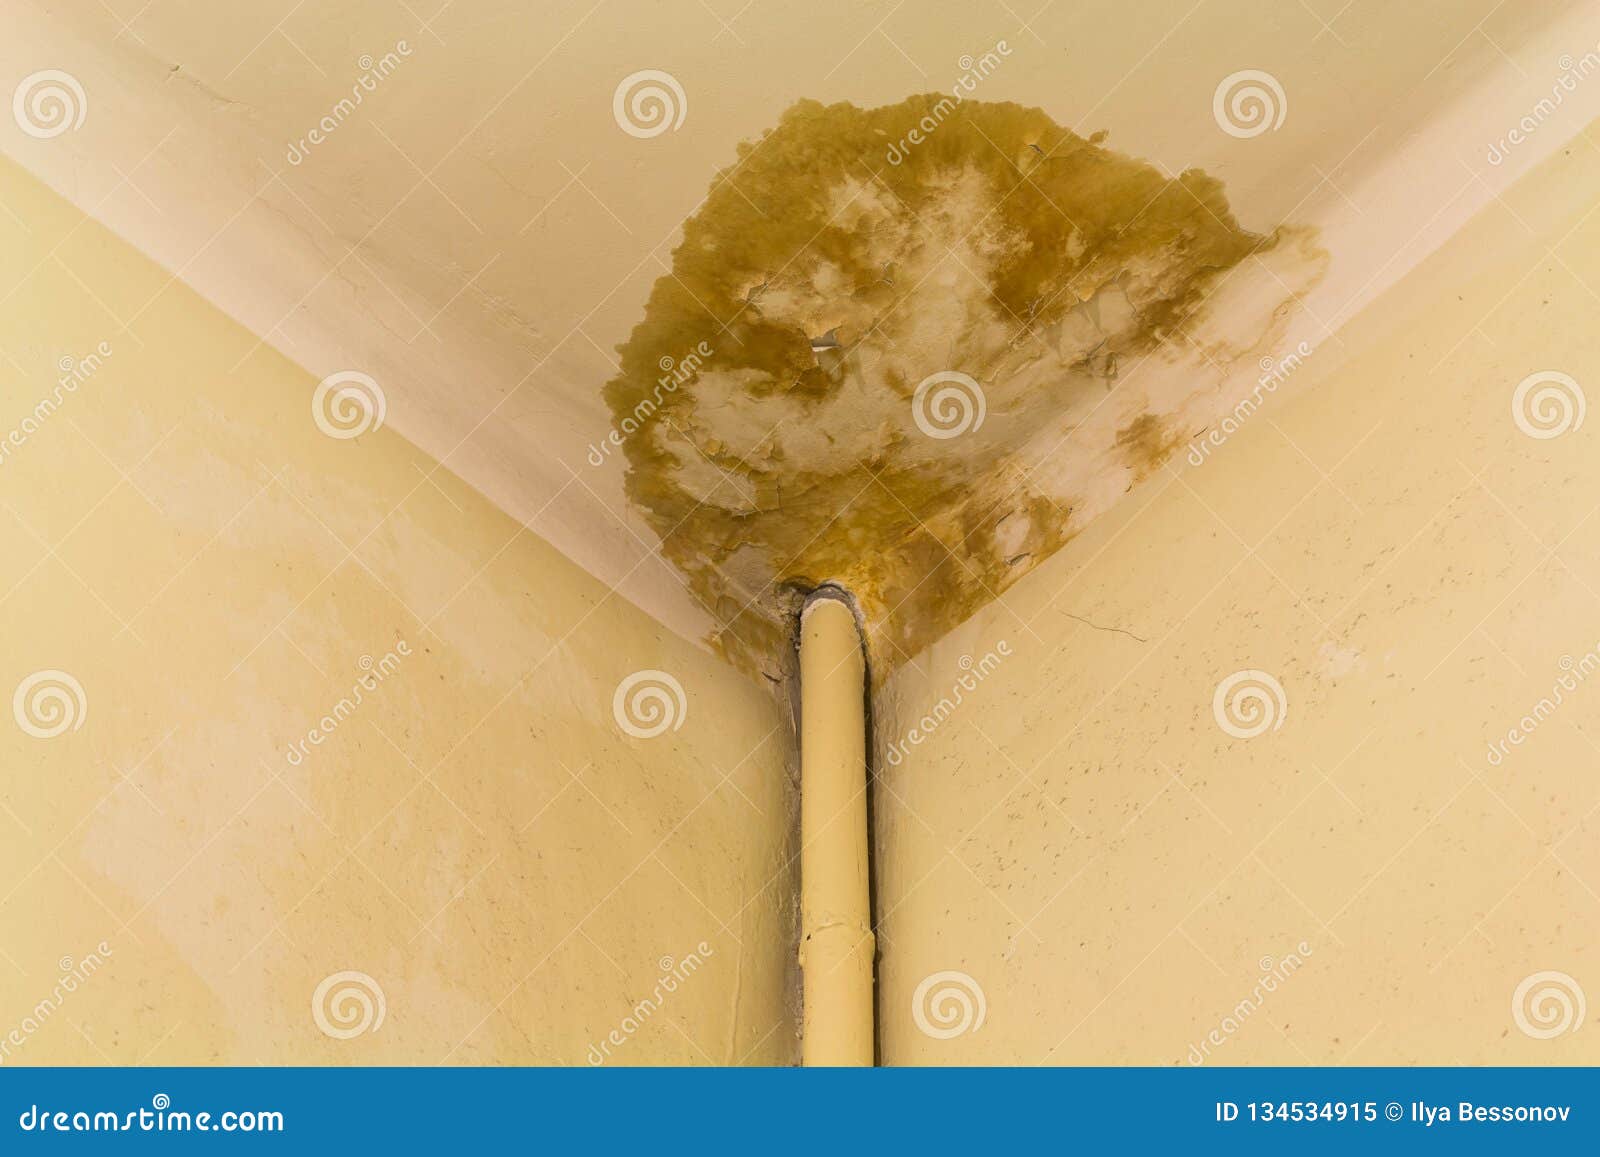 Peeling Paint On The Ceiling Rusty Water Leaking Pipe Repair Is